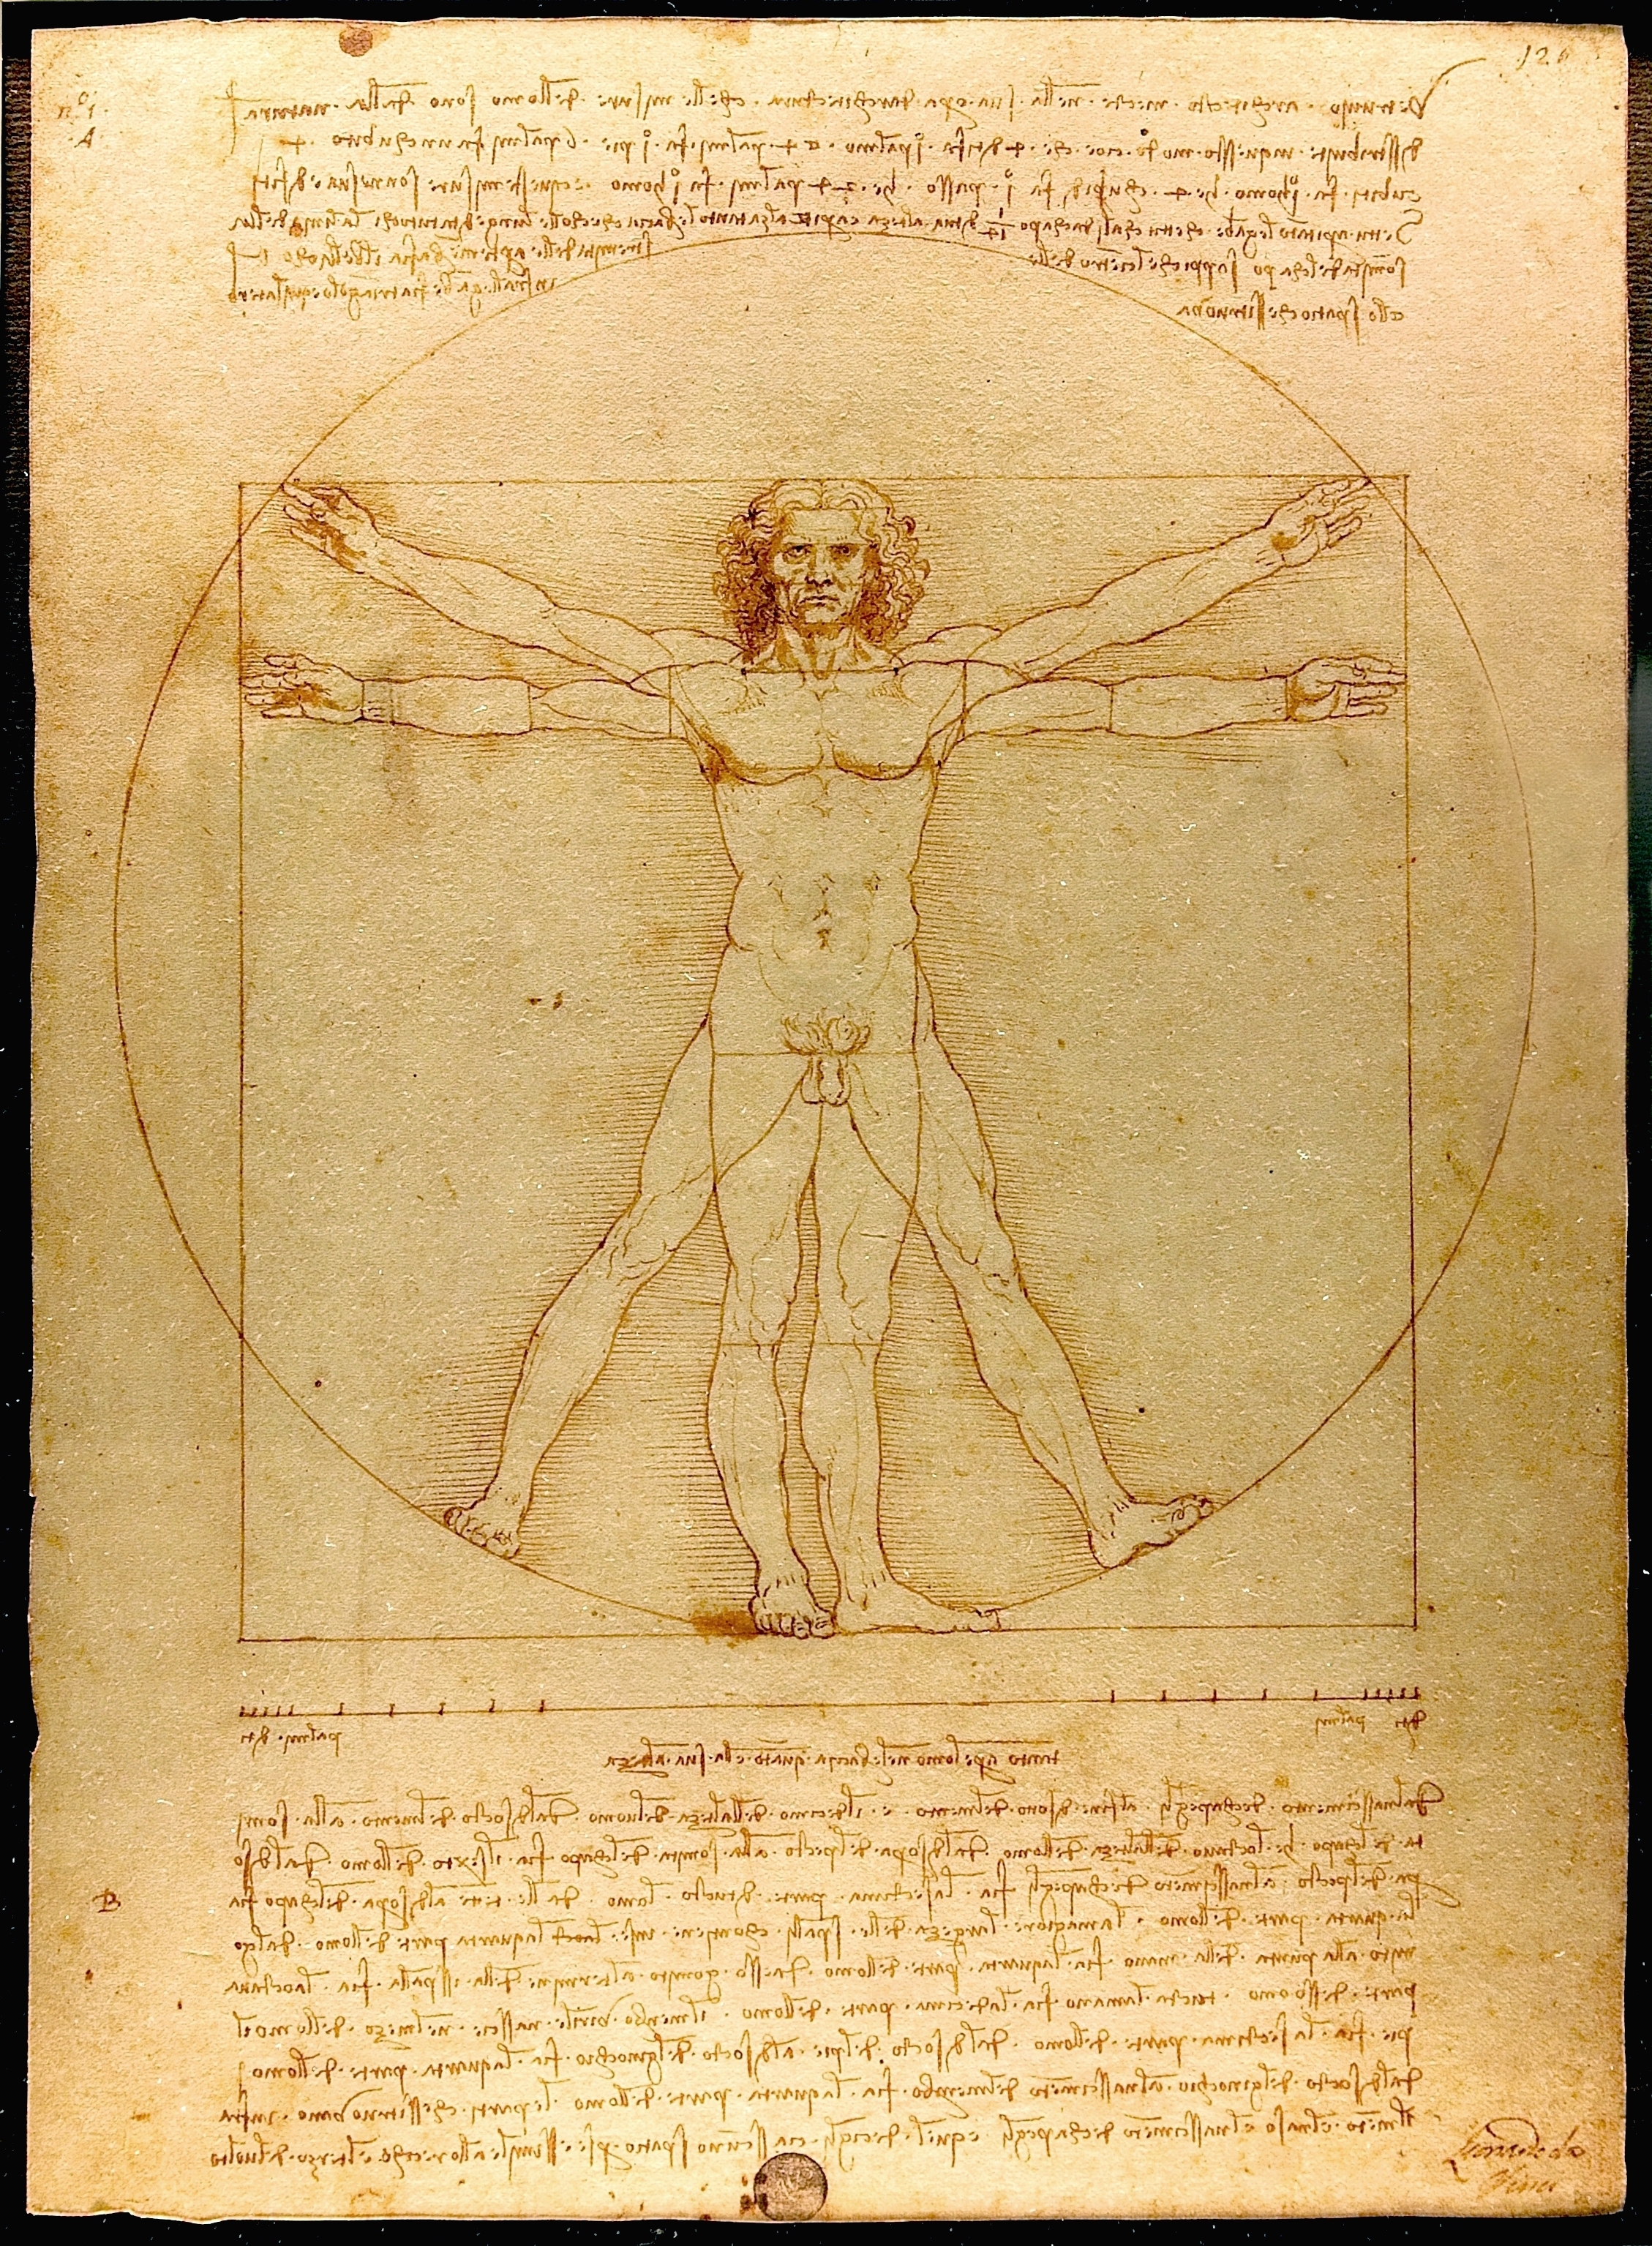 The Vitruvian Man by Leonardo da Vinci - 1490 - 35 cm x 26 cm Gallerie dell'Accademia